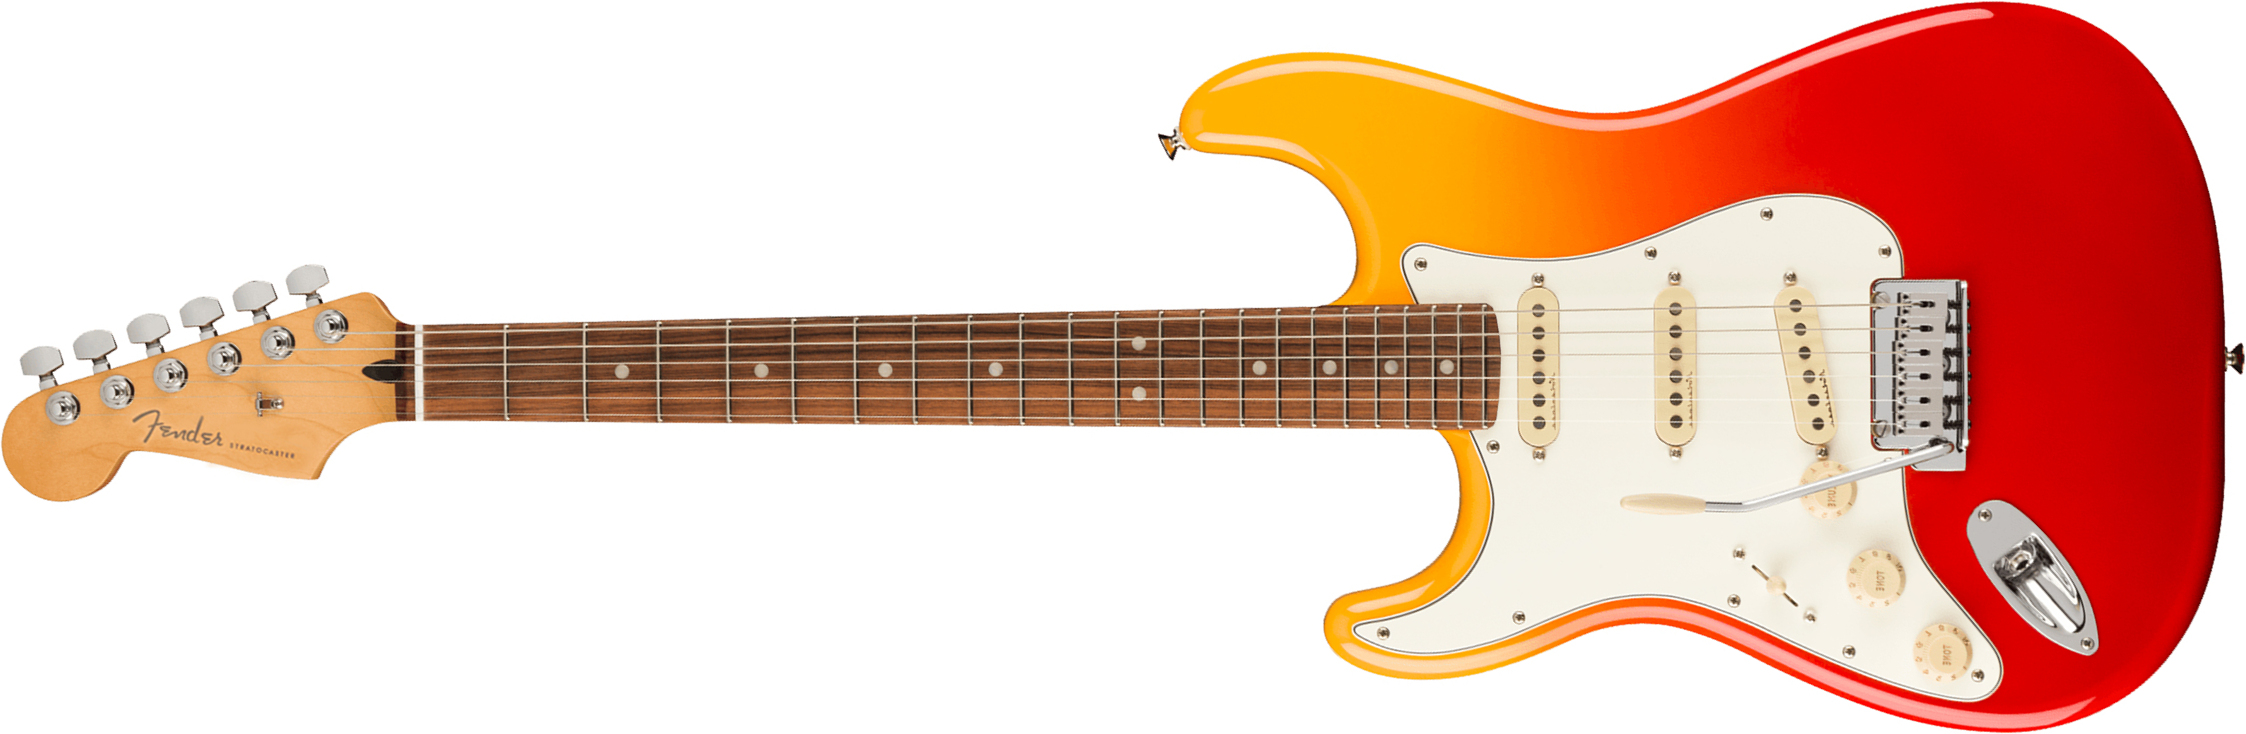 Fender Strat Player Plus Lh Gaucher Mex 3s Trem Pf - Tequila Sunrise - Guitare Électrique Gaucher - Main picture